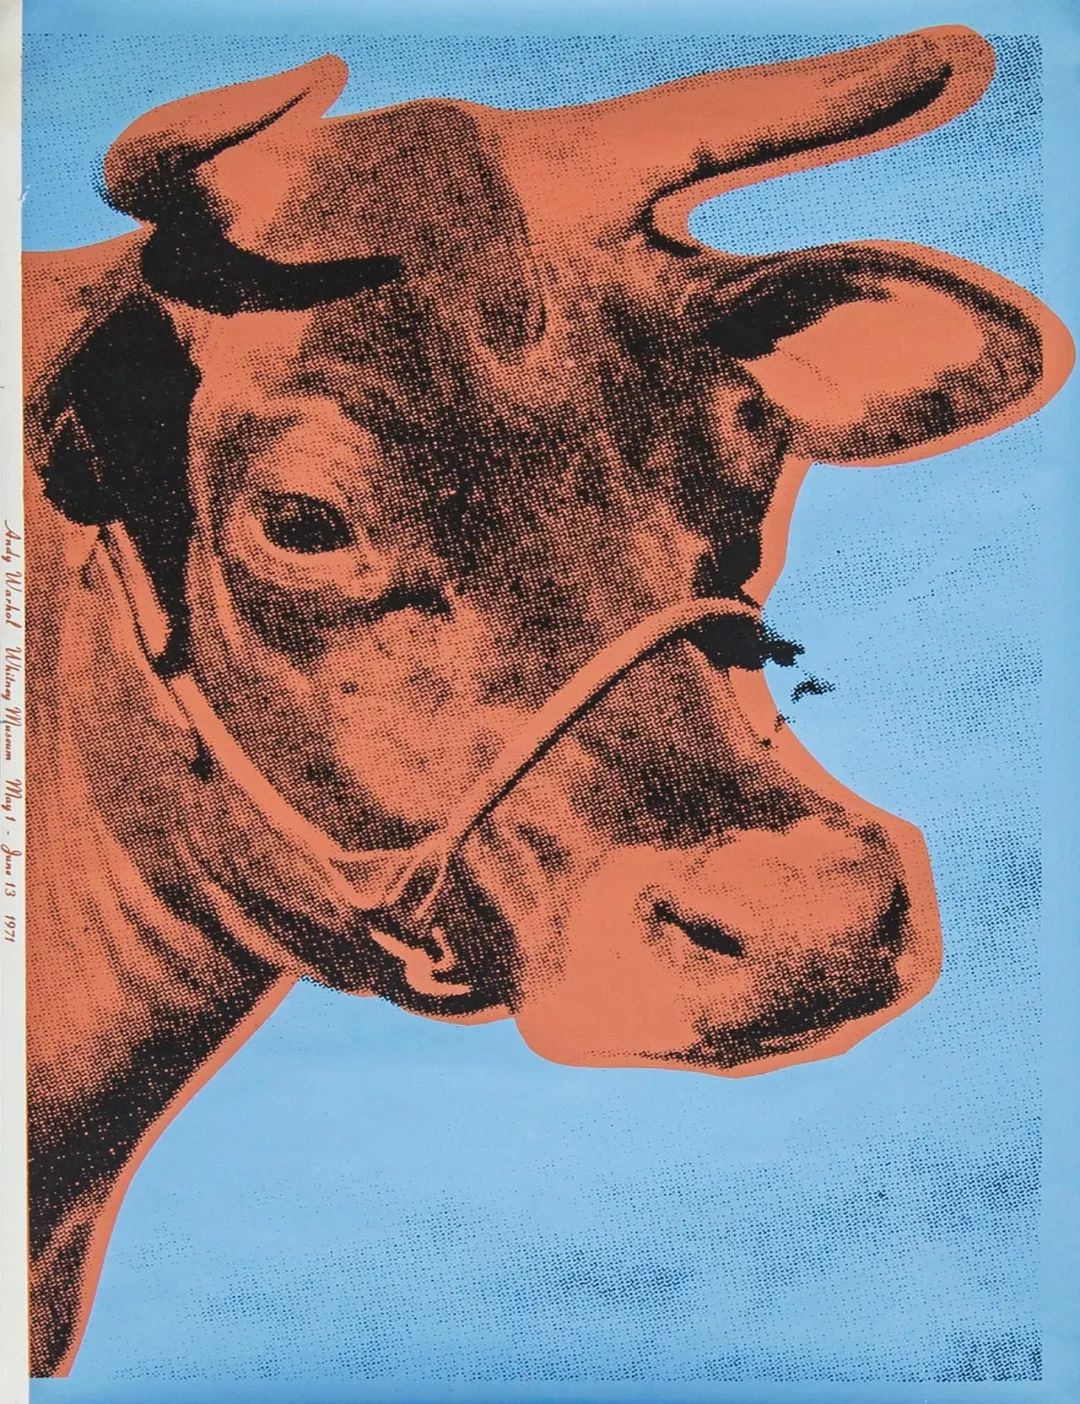 安迪·沃霍尔《牛》,丝网印刷,115×75cm,1971年